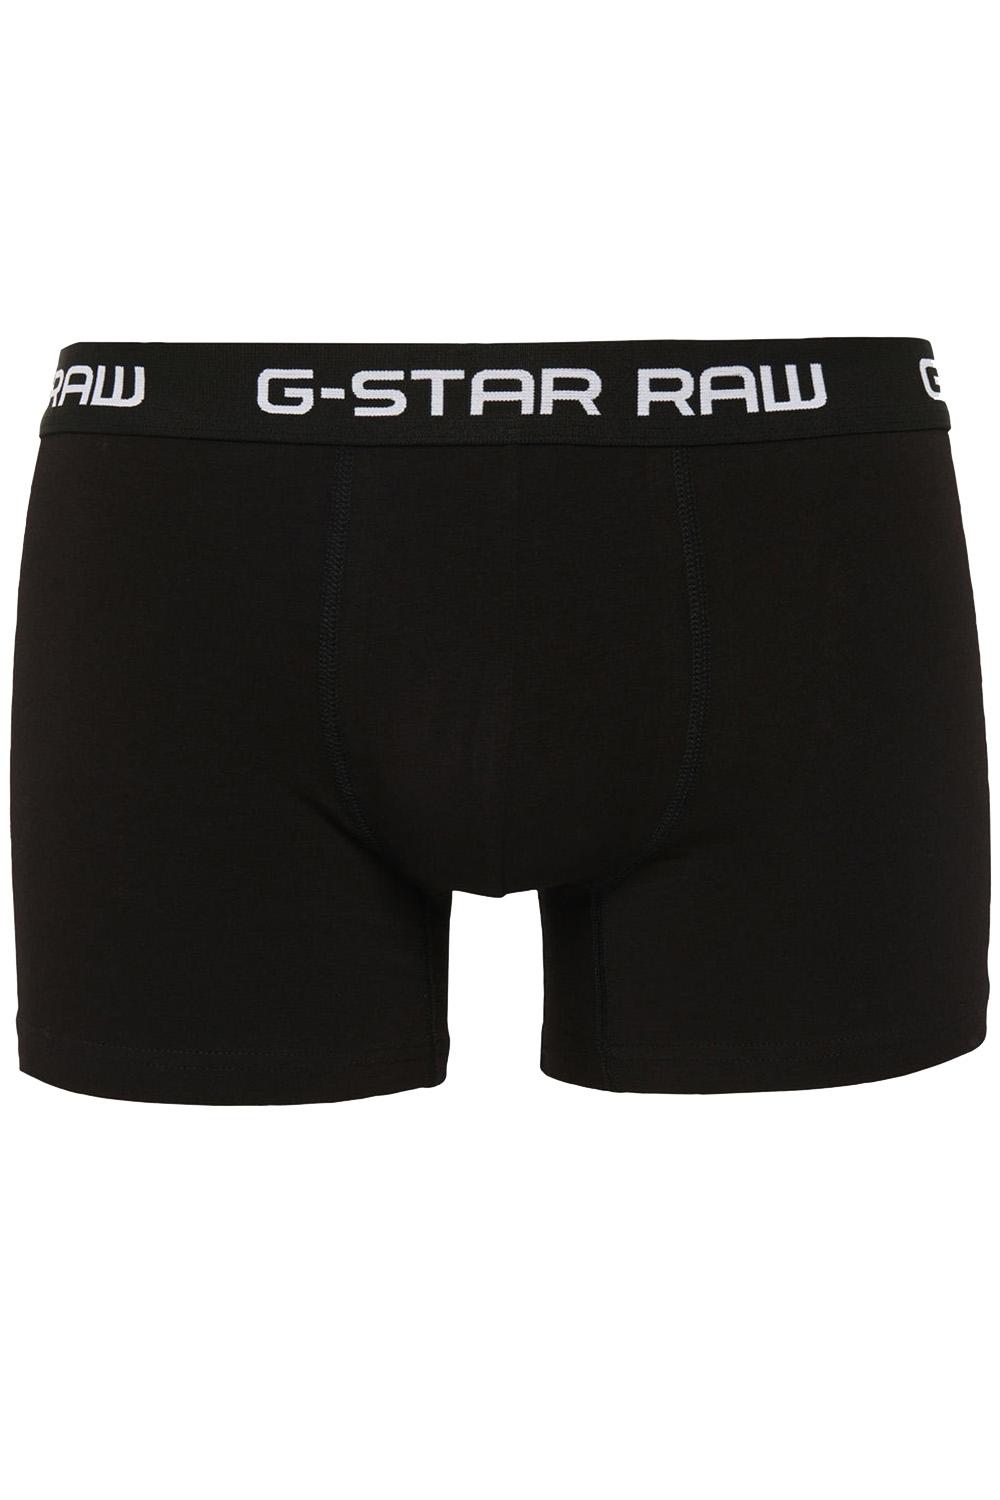 klassieke boxers 3 pack d03359 g-star raw ondergoed 4248 black/black/black